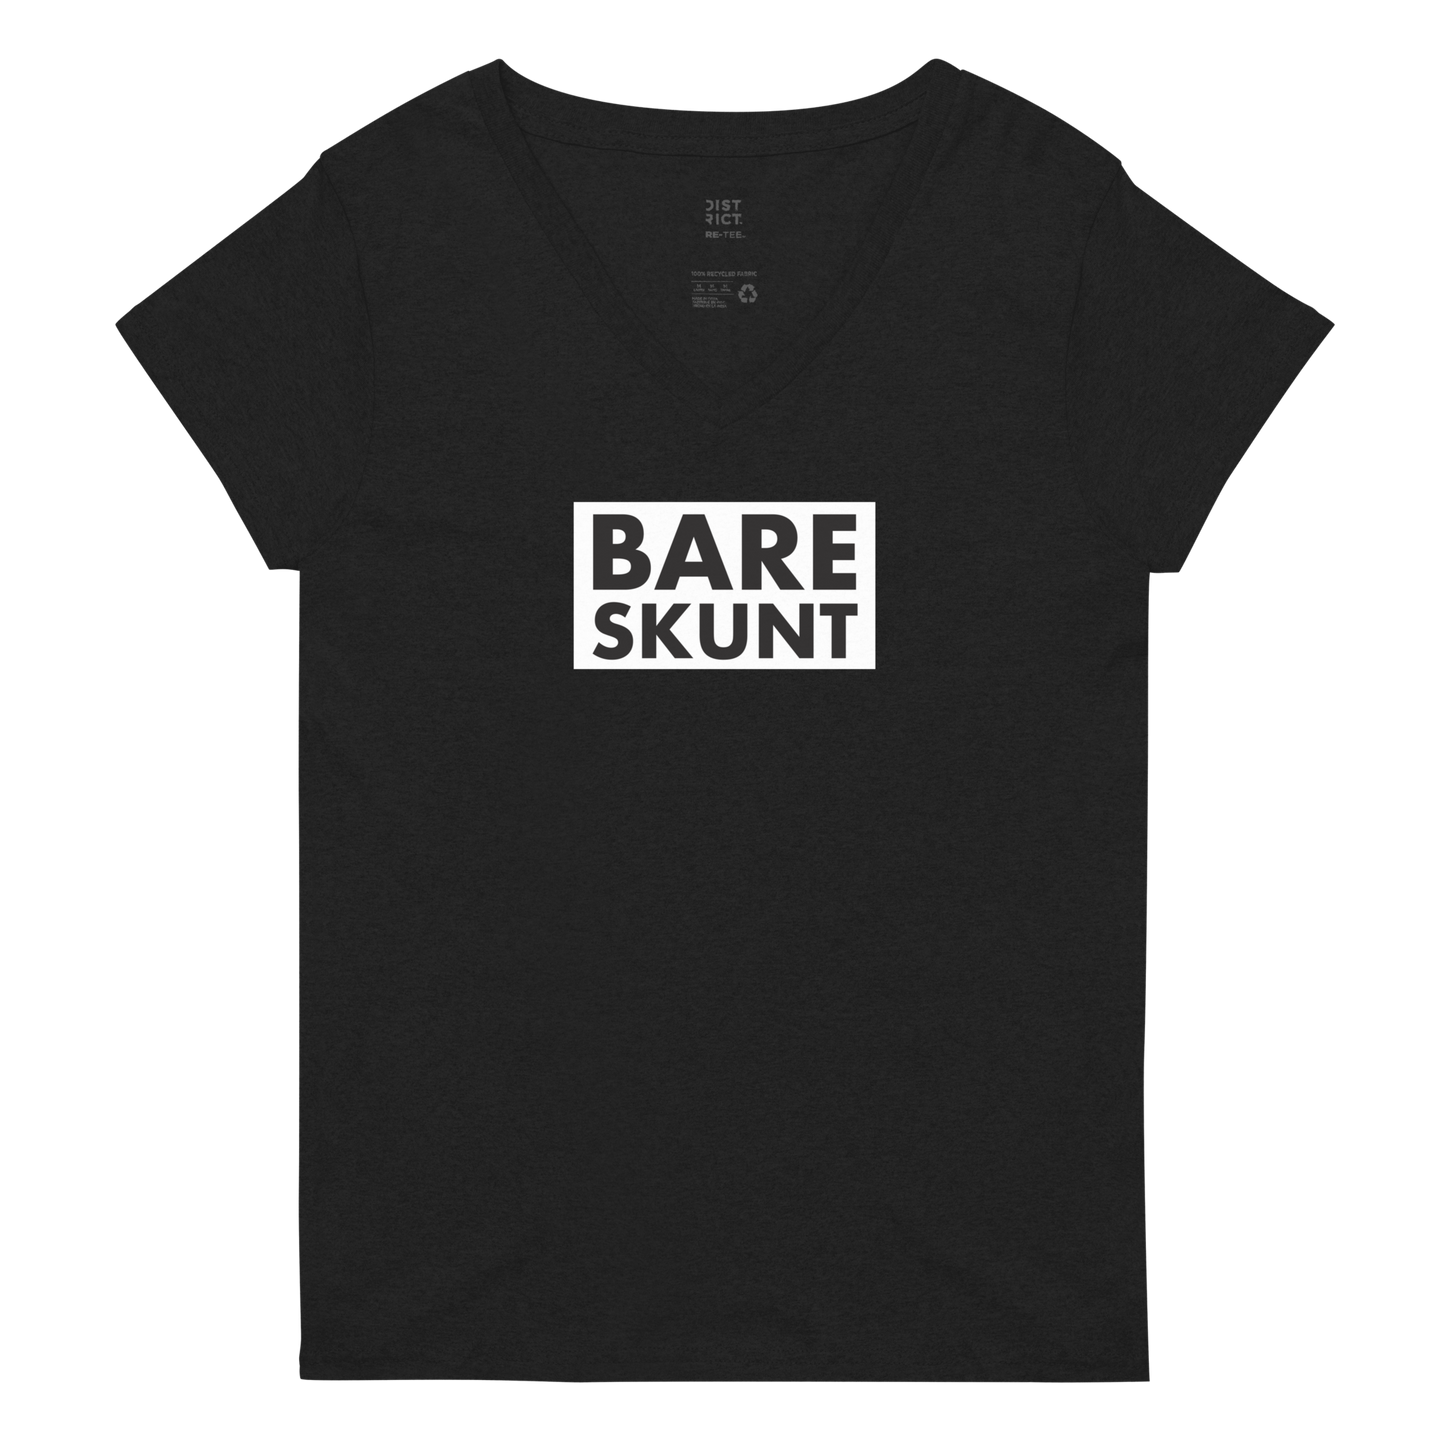 Bare Skunt Women’s v-neck t-shirt